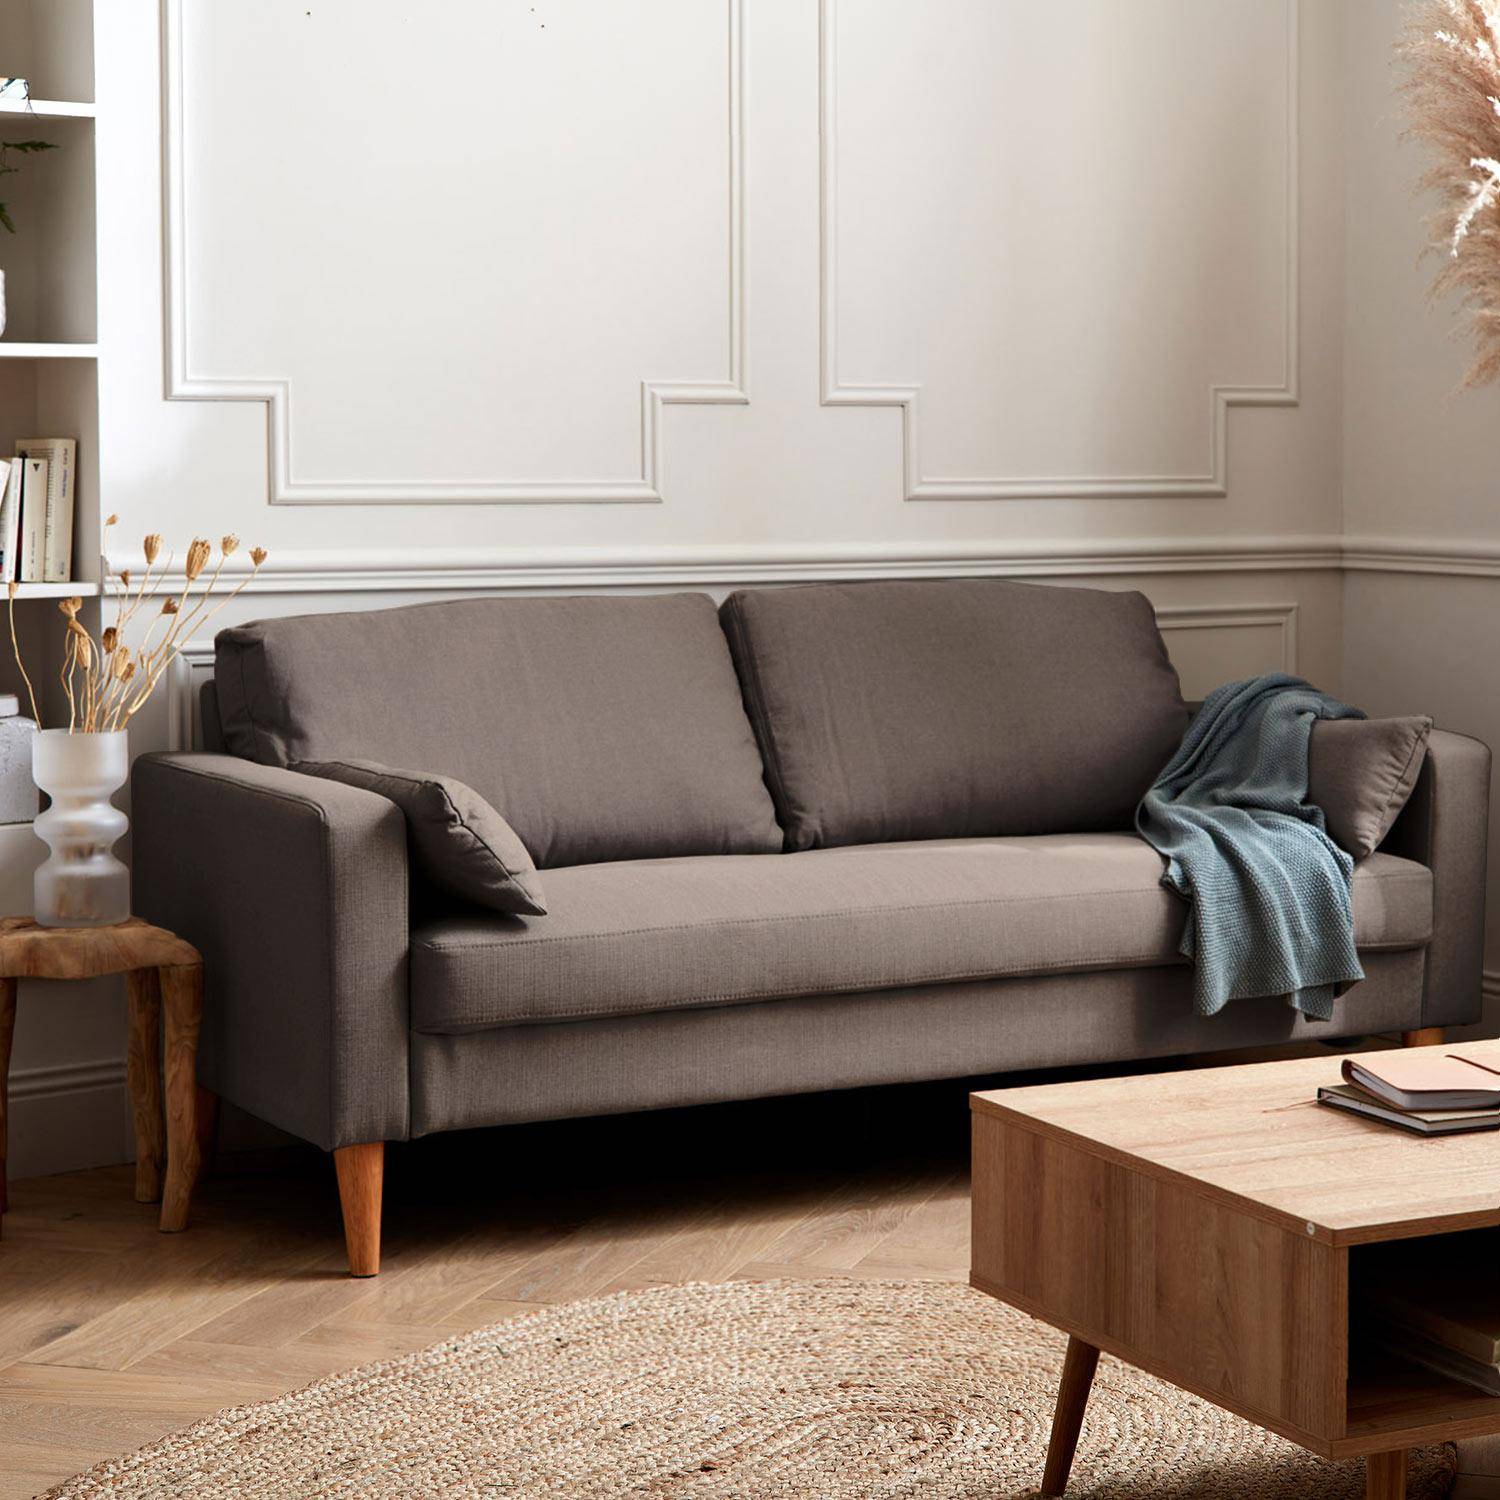 Donkergrijze stoffen driezits sofa - Bjorn - 3-zits bank met houten poten, scandinavische stijl   Photo1